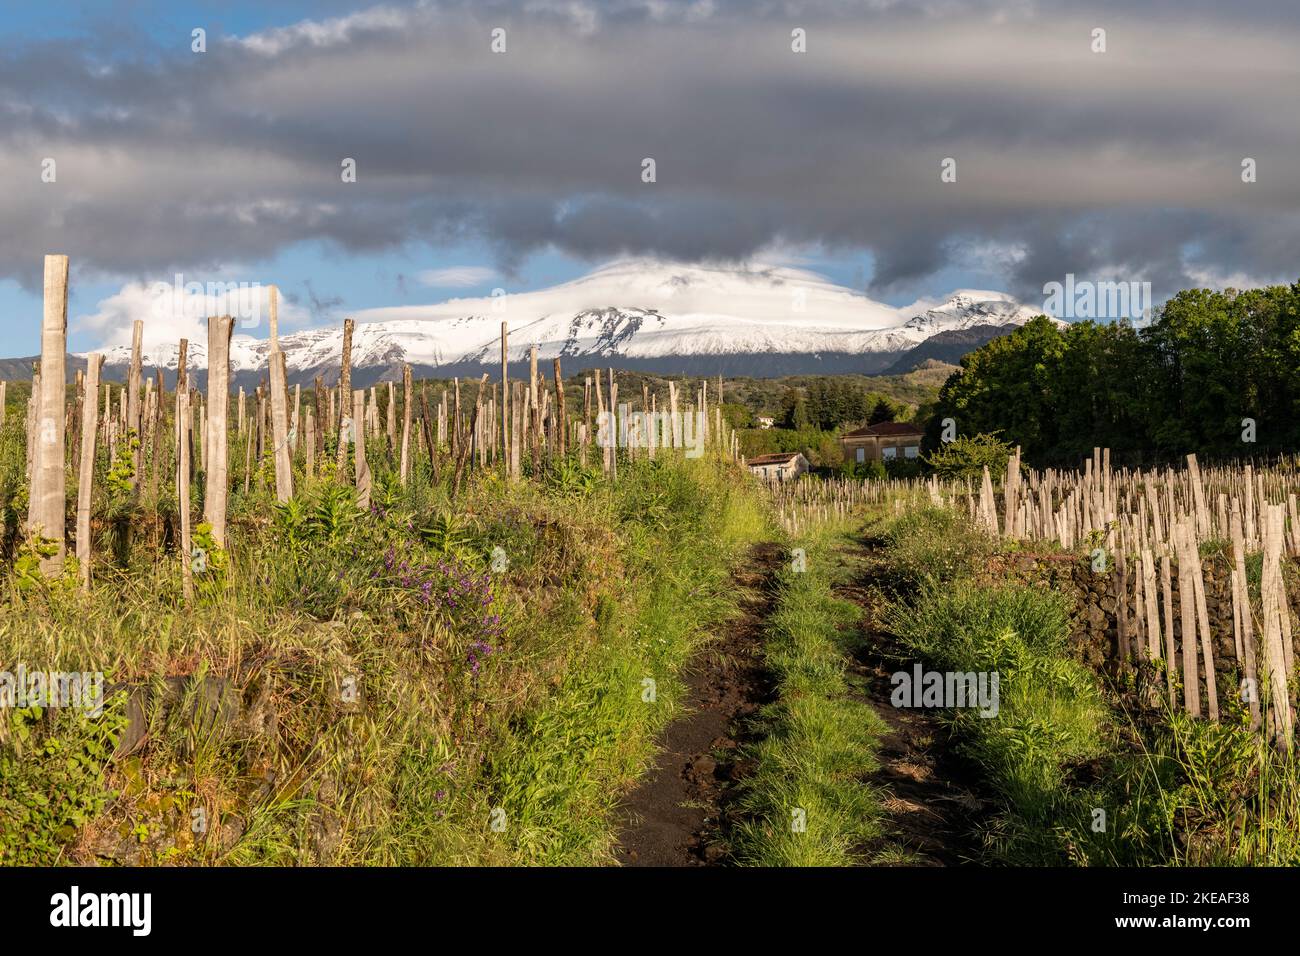 Ein Weinberg im Dorf Milo, hoch an den Hängen eines schneebedeckten Ätna, Sizilien. Ätna Weine werden immer beliebter Stockfoto